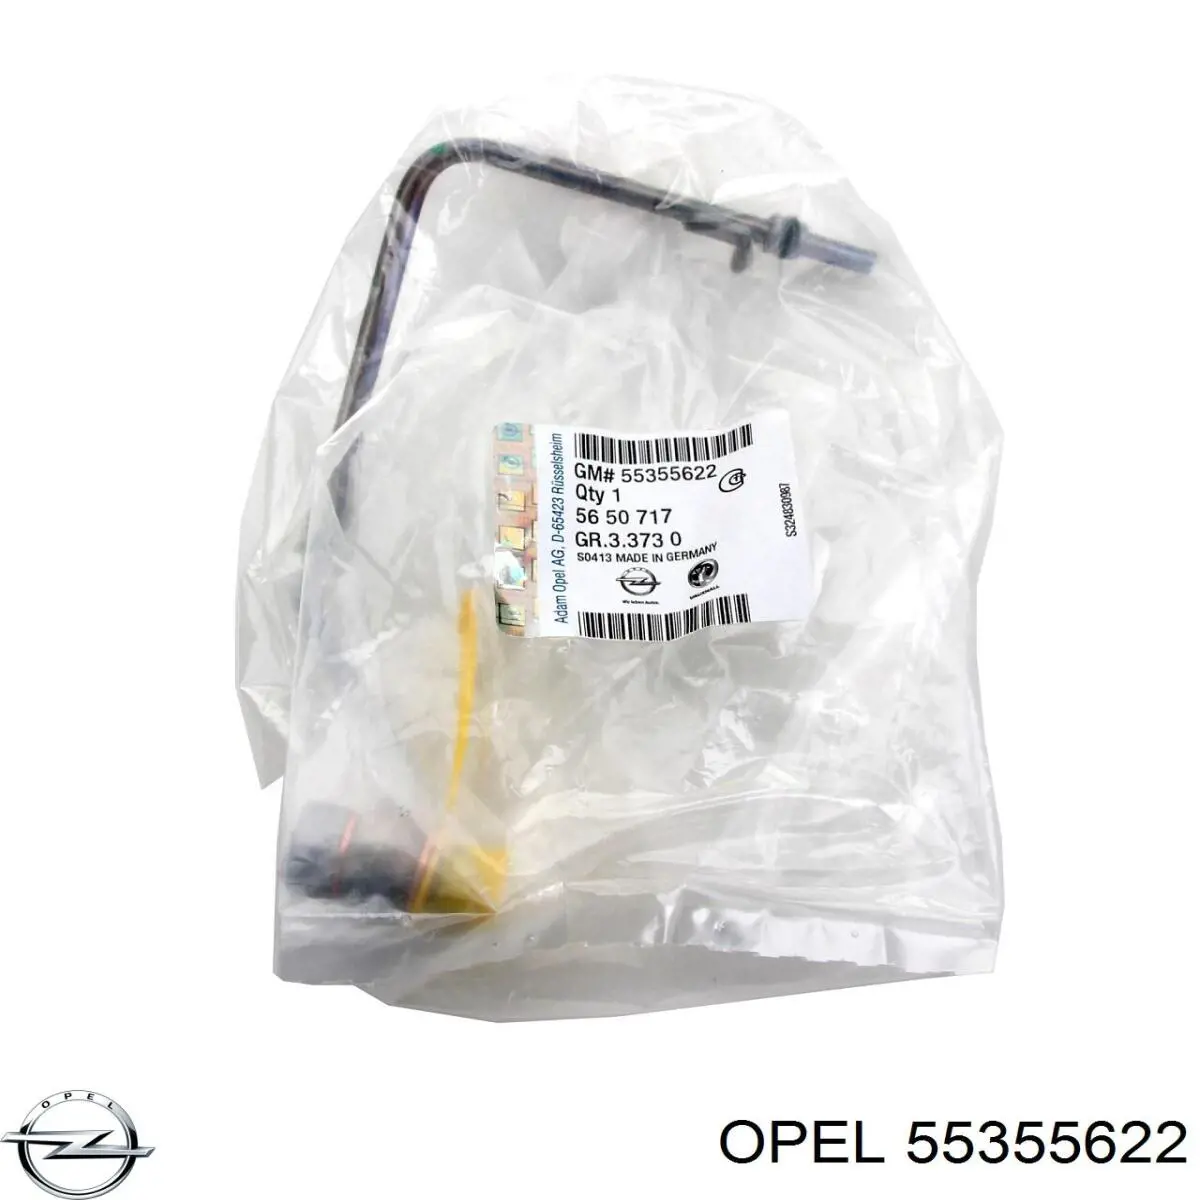 55355622 Opel tubo (manguera Para El Suministro De Aceite A La Turbina)